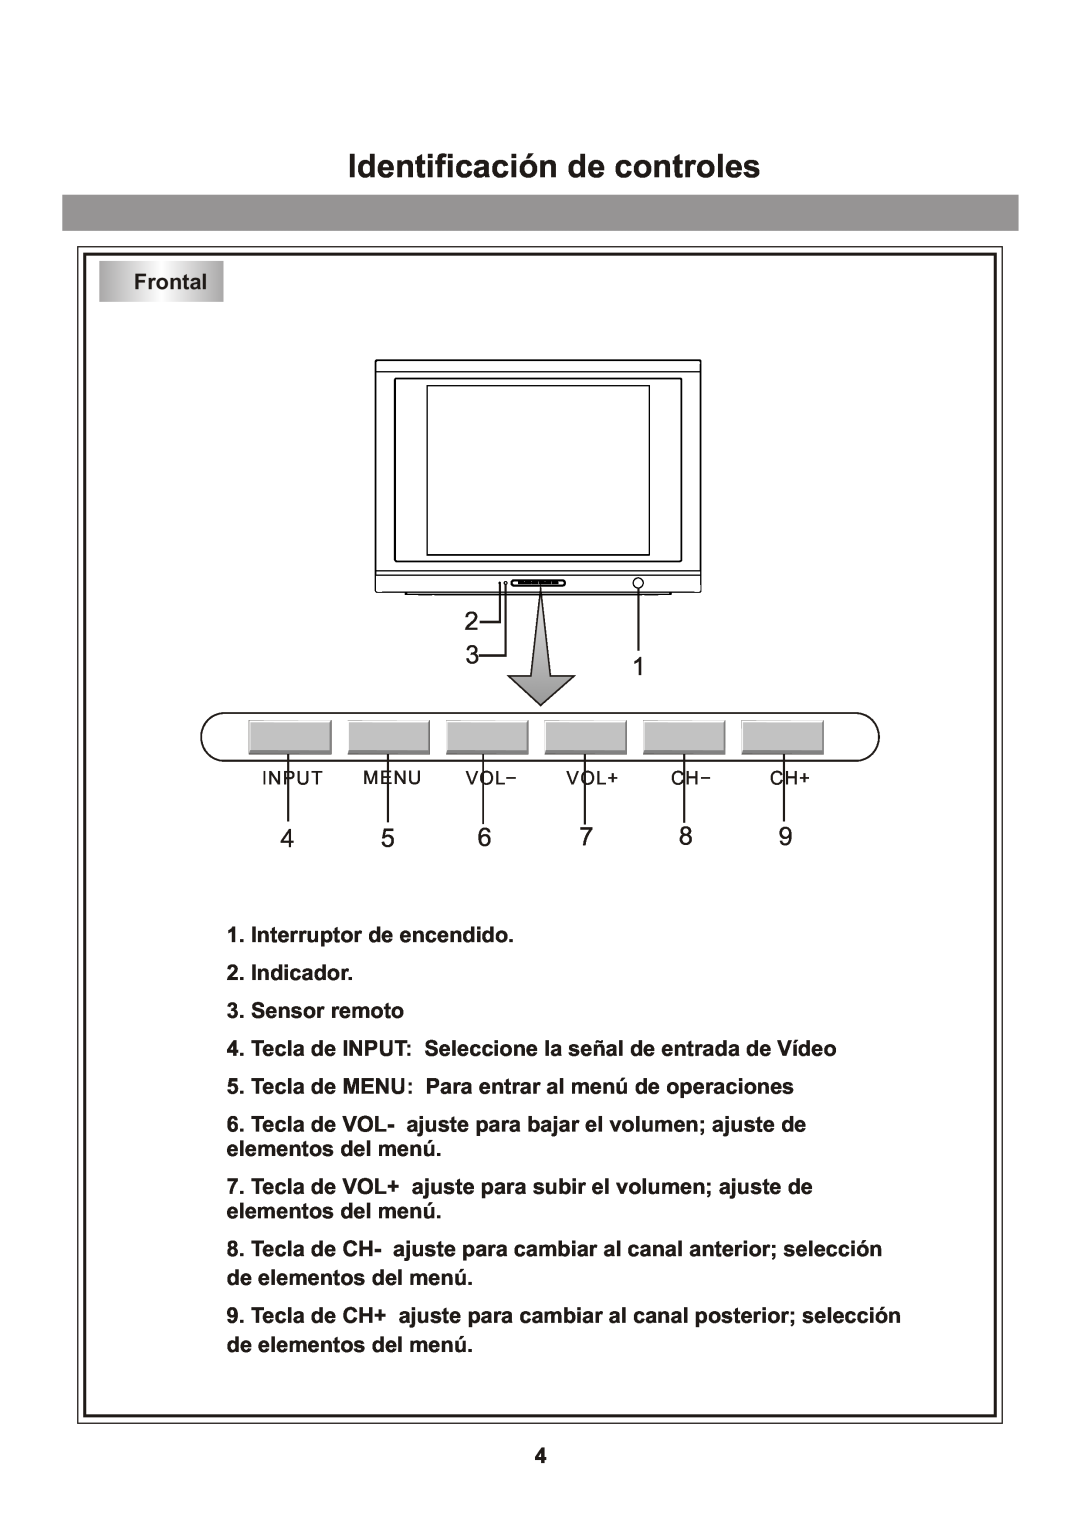 Memorex Flat Screen Tv manual Identificación de controles, Frontal, Interruptor de encendido 2. Indicador 3. Sensor remoto 